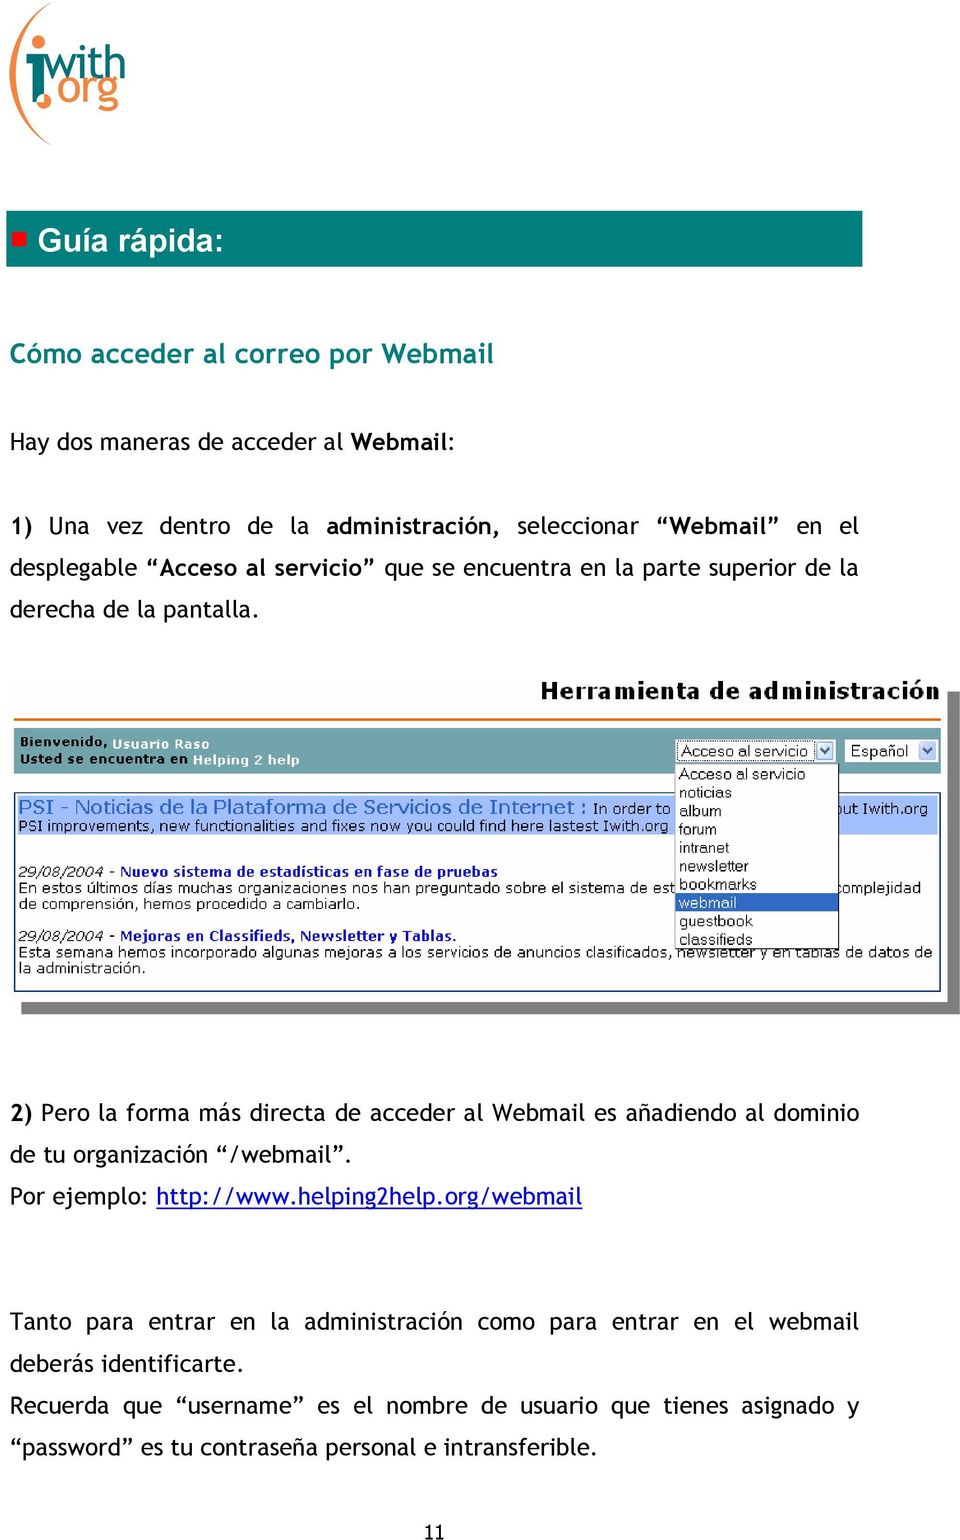 2) Pero la forma más directa de acceder al Webmail es añadiendo al dominio de tu organización /webmail. Por ejemplo: http://www.helping2help.